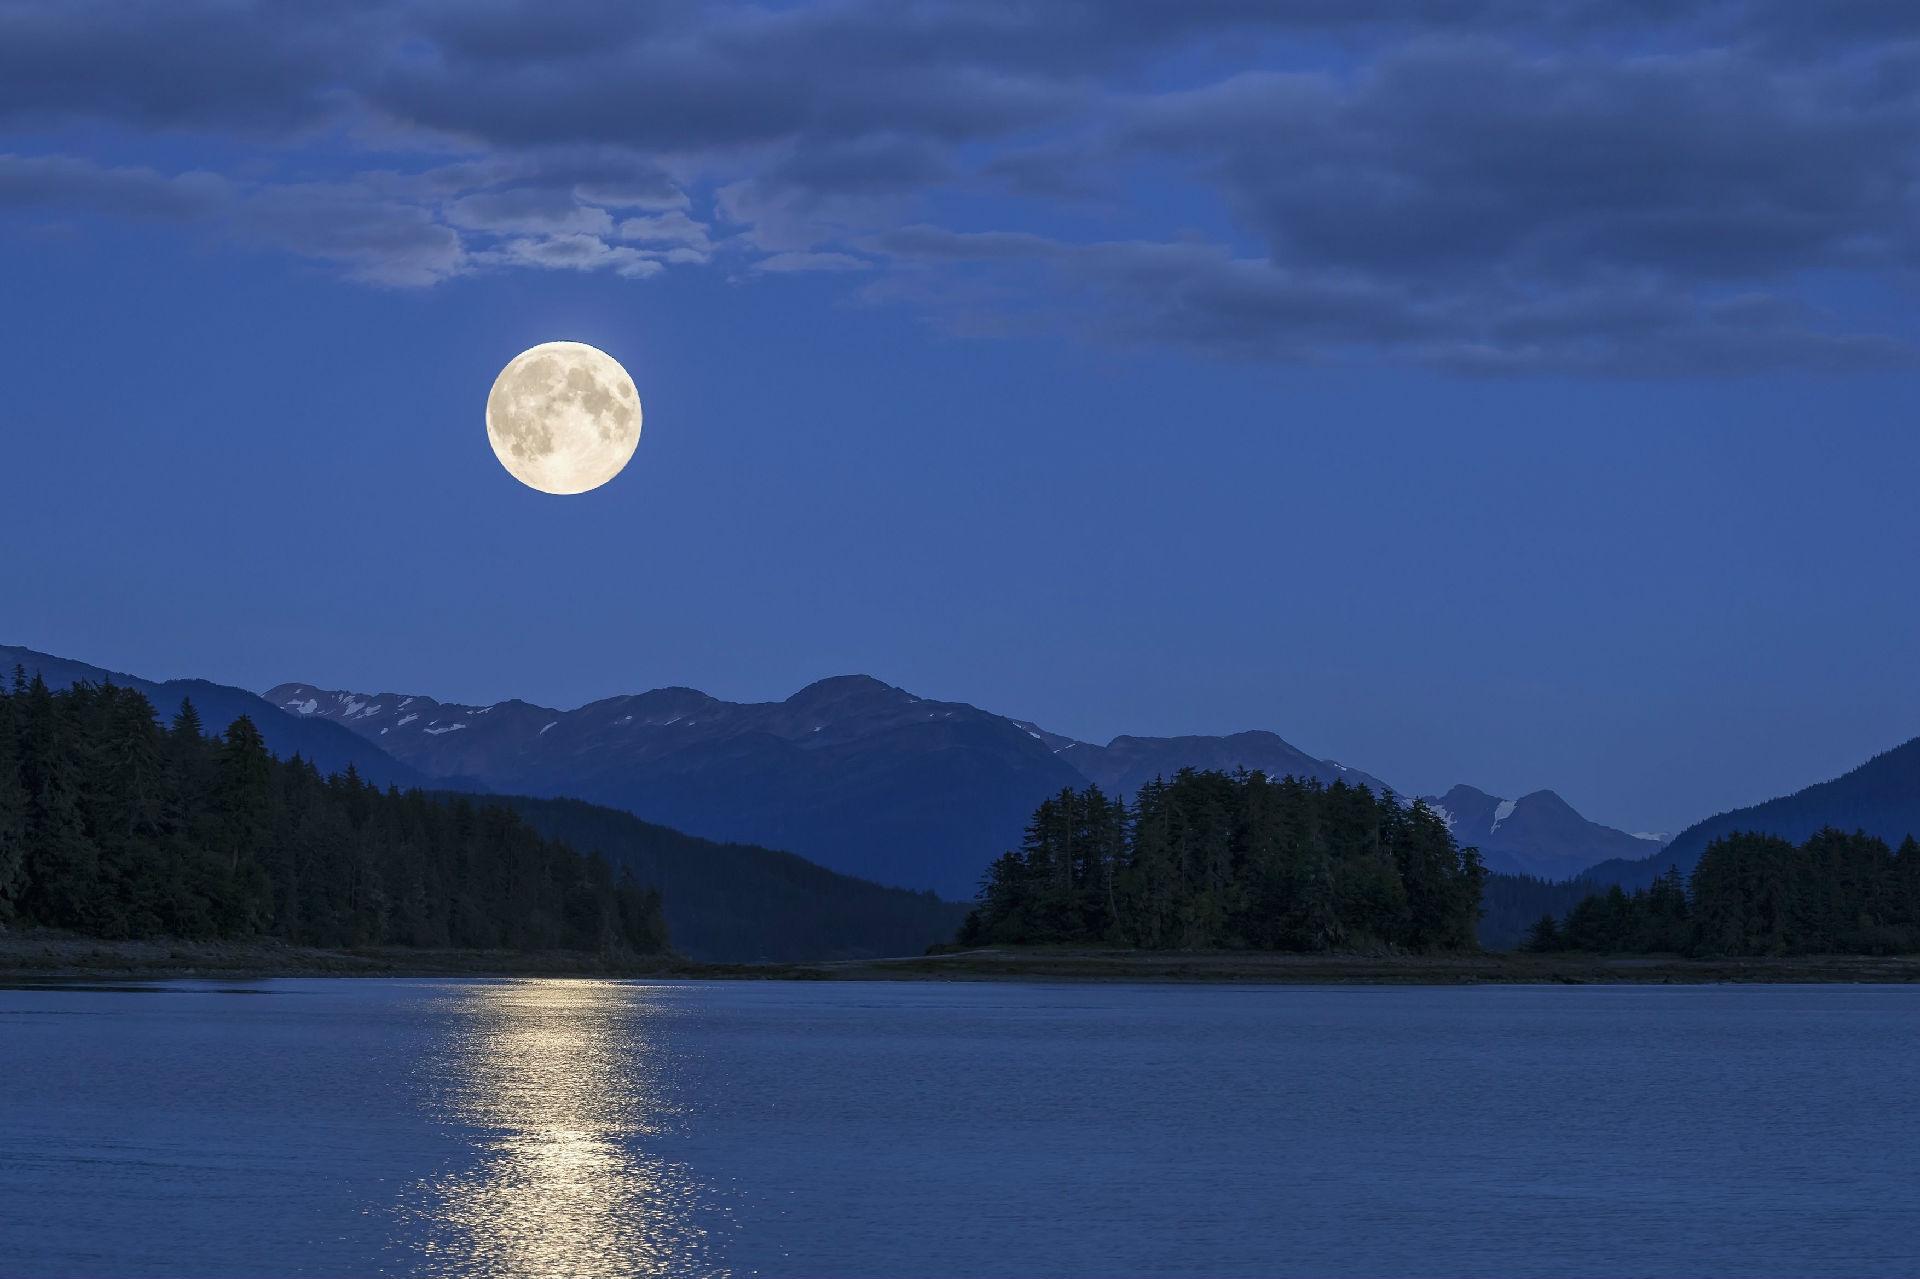 山、月亮、天空 - 免费可商用图片 - cc0.cn